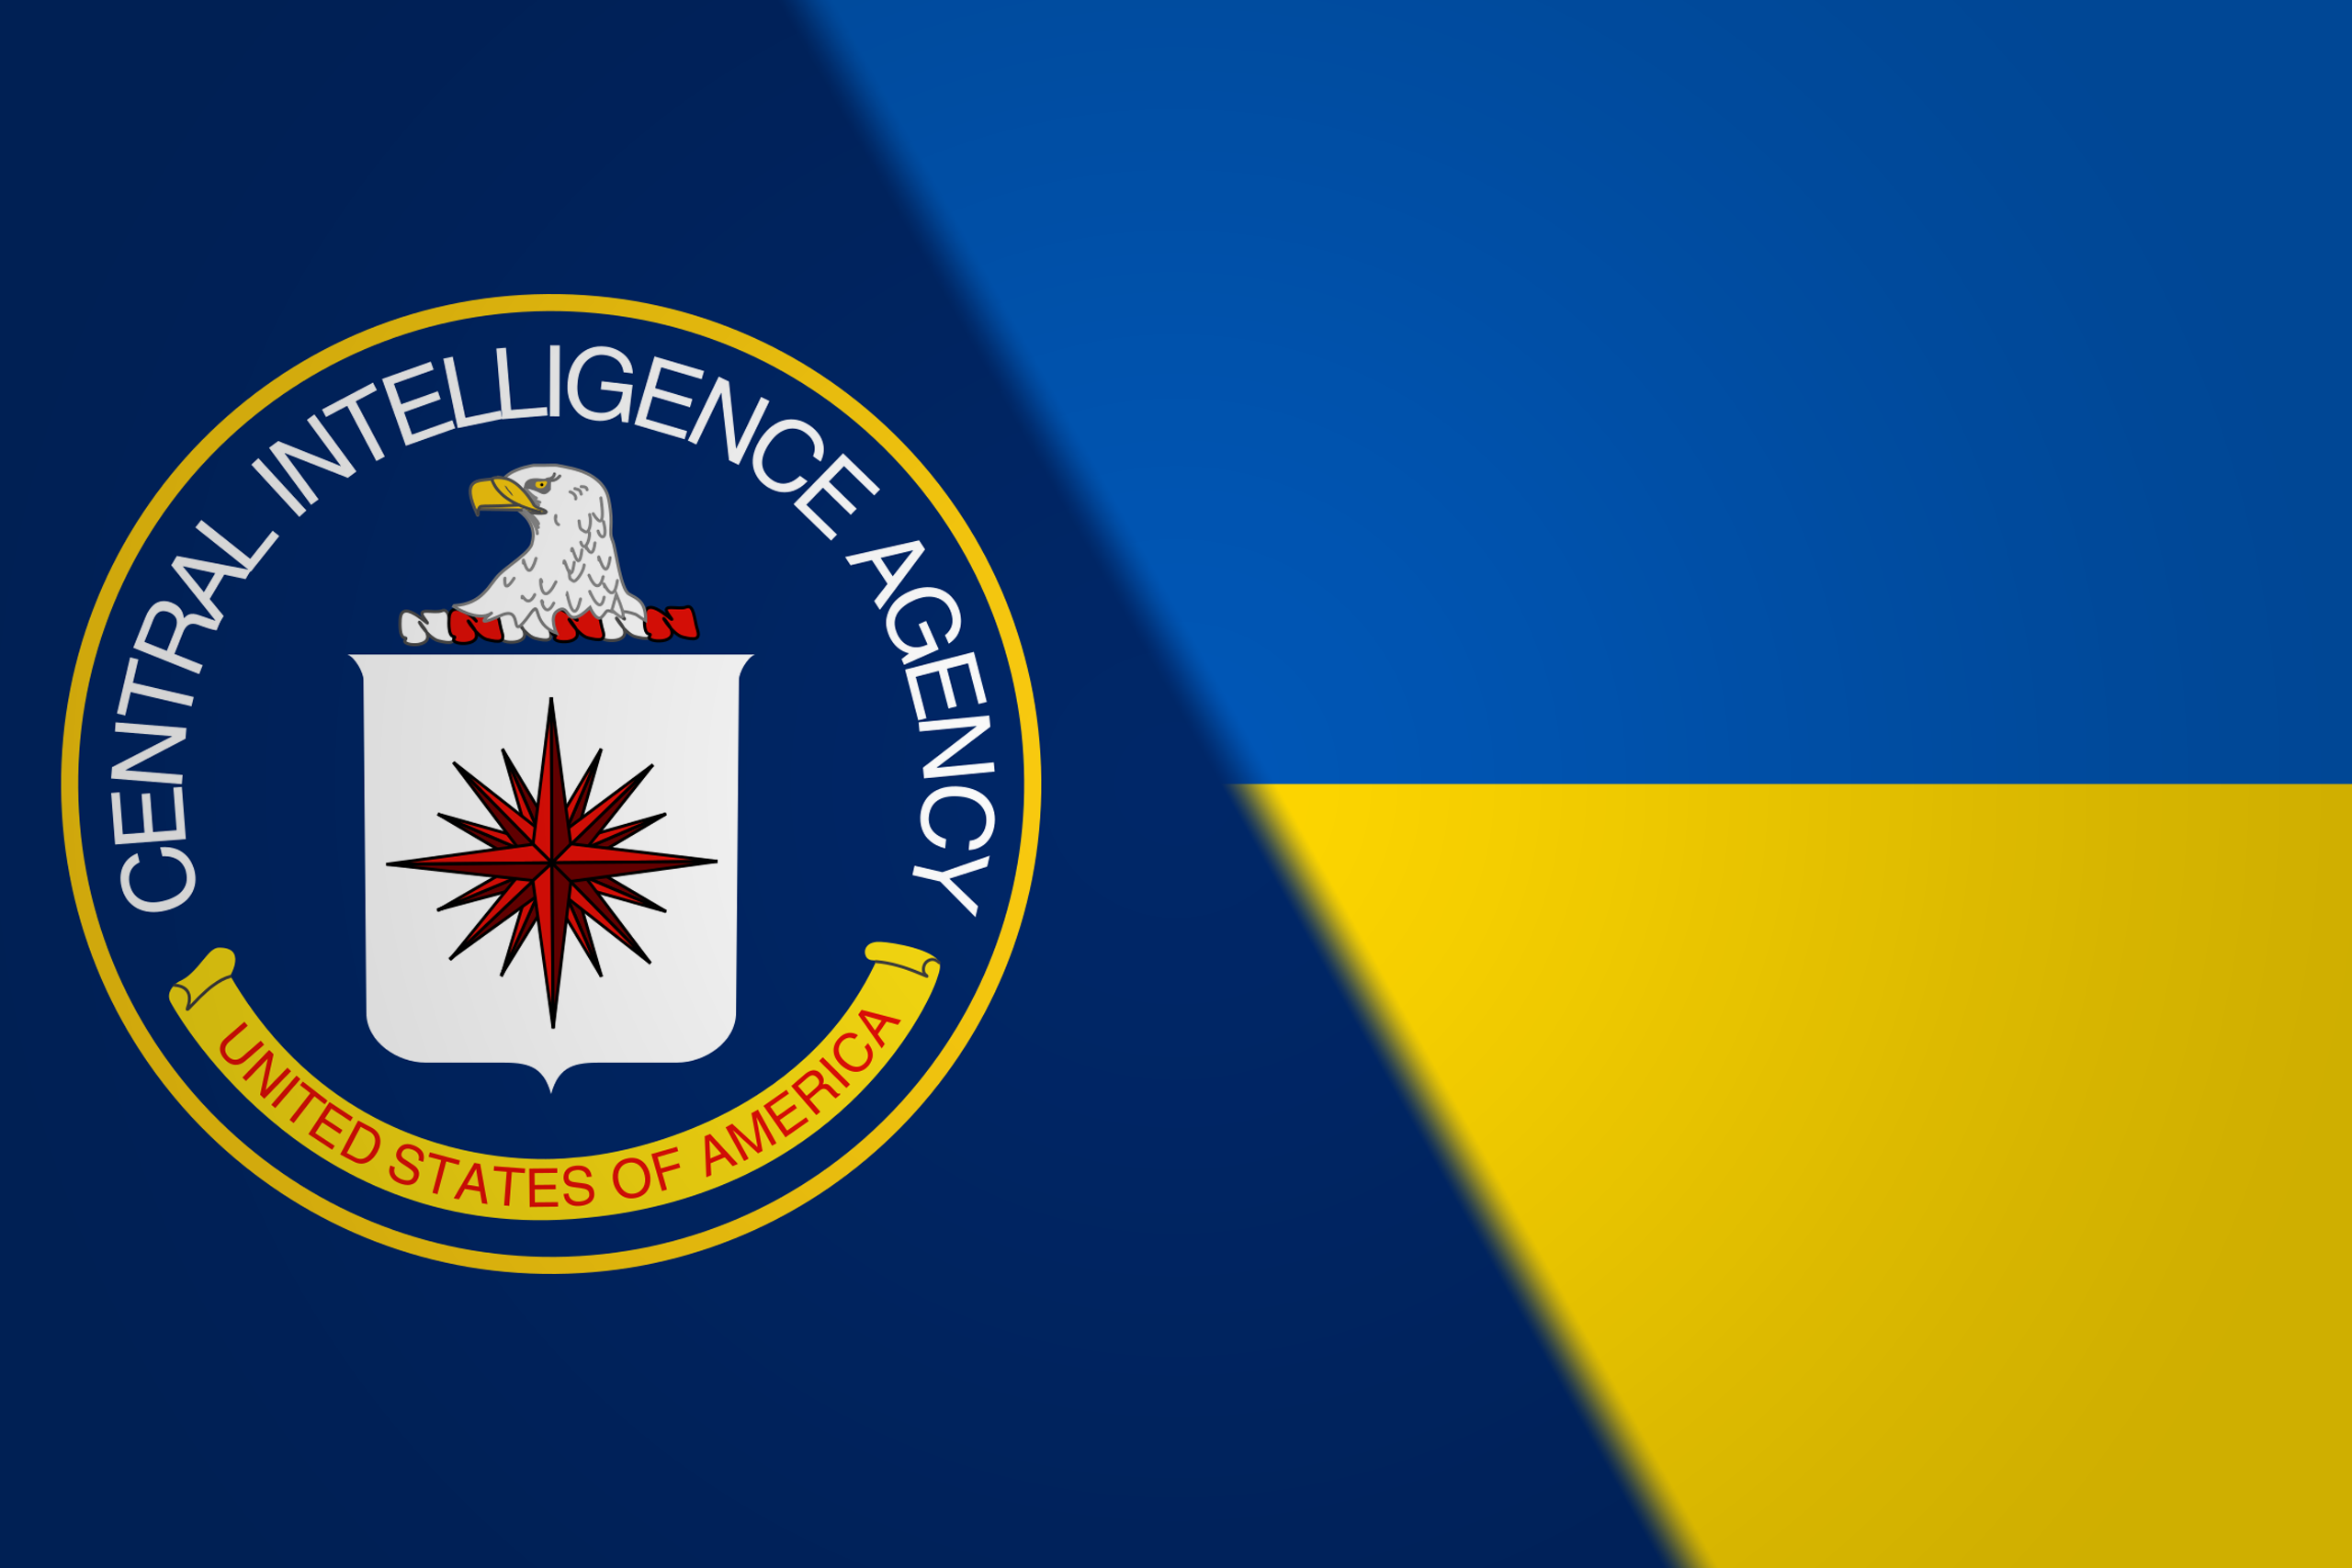 Ukraine & CIA collaboration